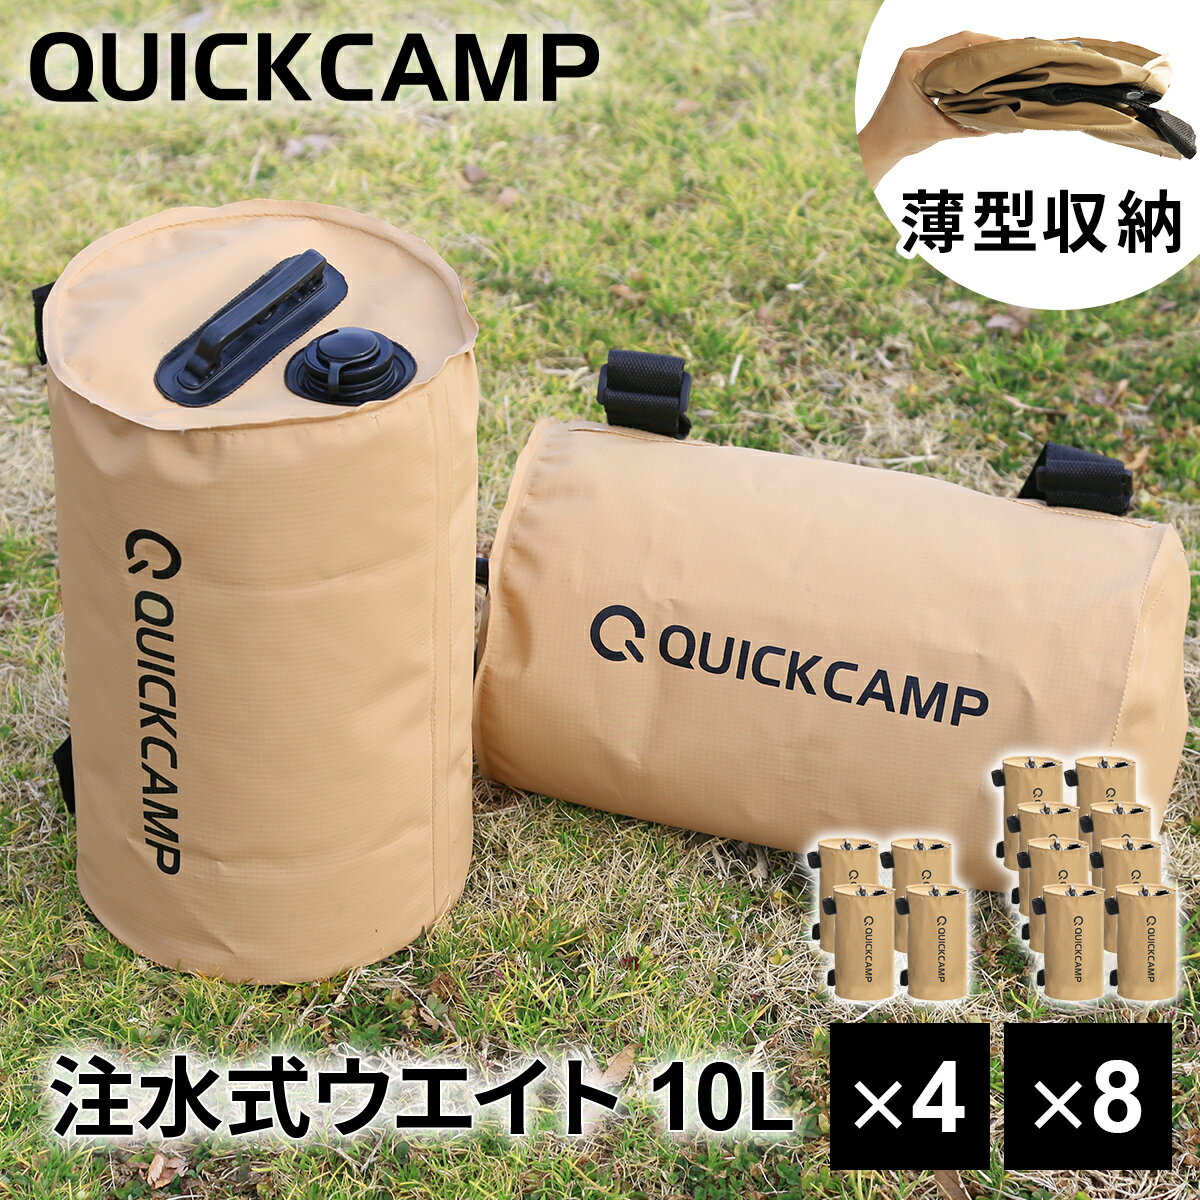 【楽天1位】クイックキャンプ QUICKCAMP アウトドア テント タープ用 ウエイトバッグ 注水式 10リットル 4個セット サンド QC-TW10 SD ウェイト おもり 万能ウエイト ウエイト★着後レビューで1…